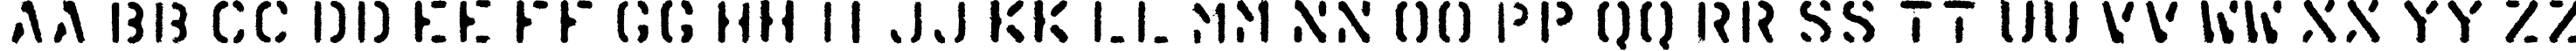 Пример написания английского алфавита шрифтом KartonC